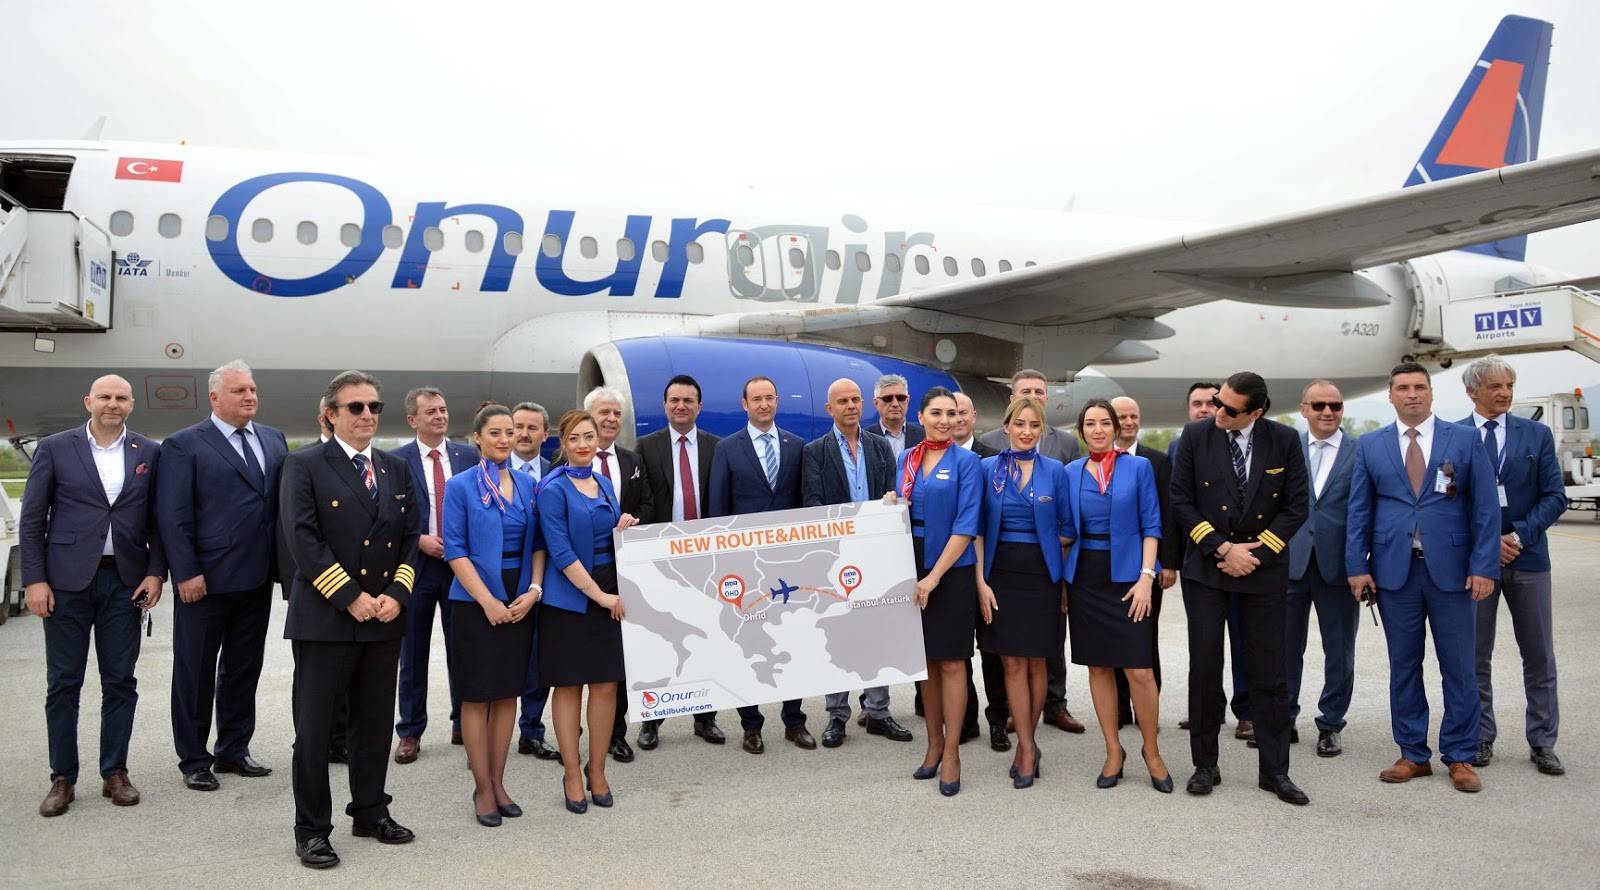 Онур эйр авиакомпания официальный сайт на русском | onur air